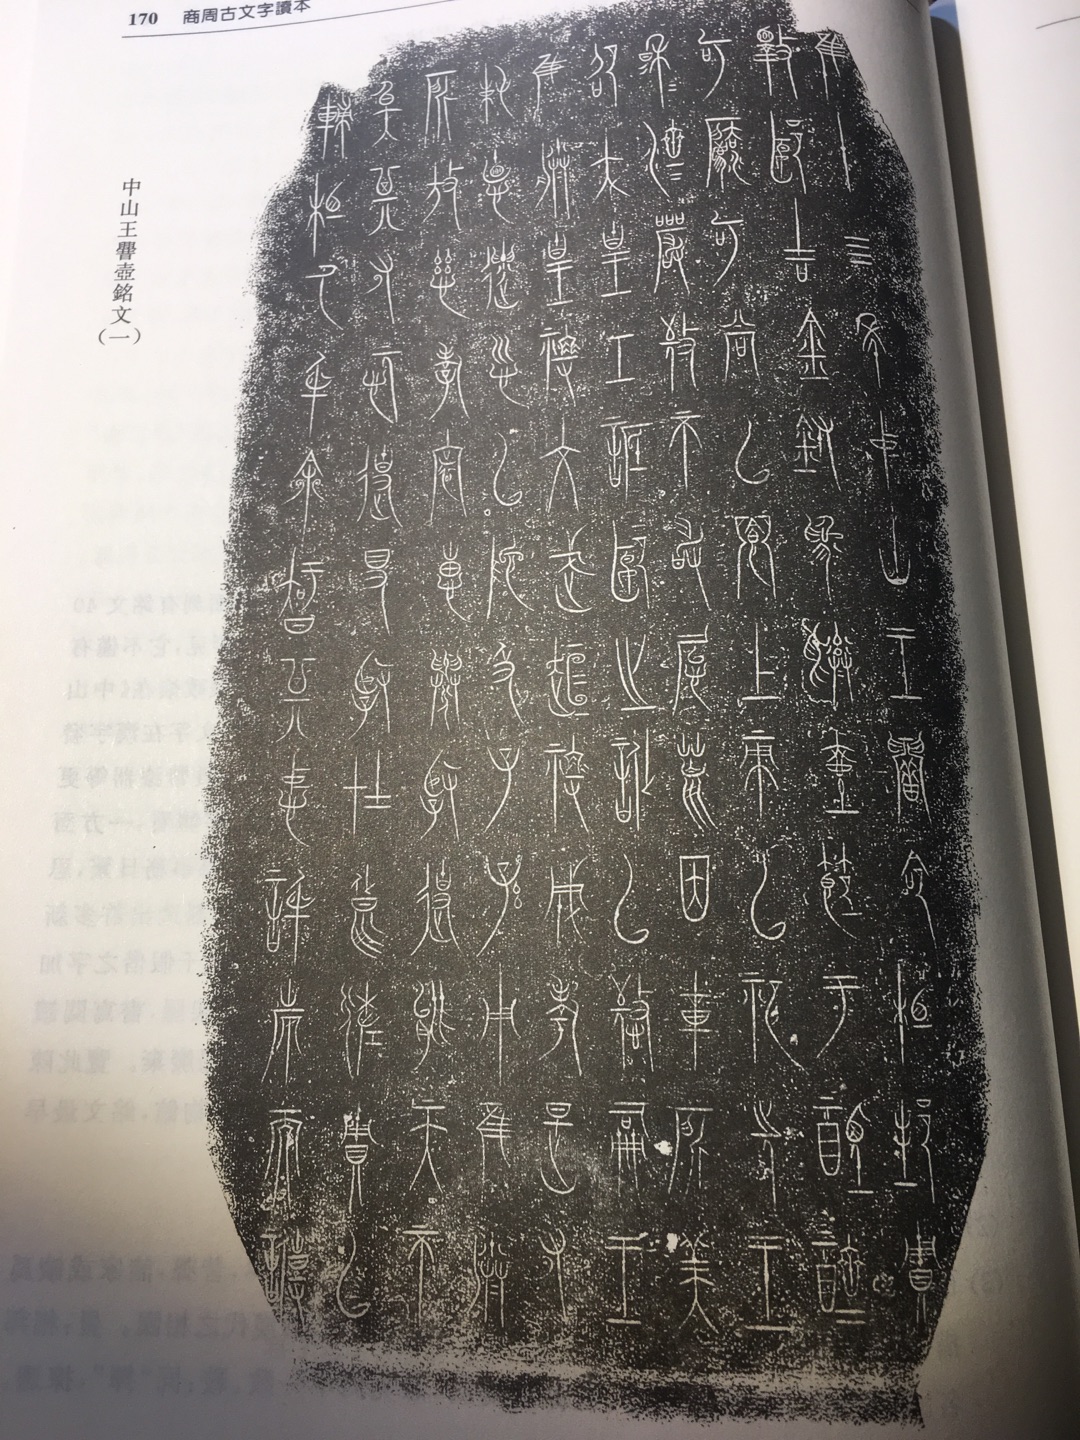 好大的一本书！印刷精美。对于学习古文字和大篆金文的朋友。是一本很好的译本资料！